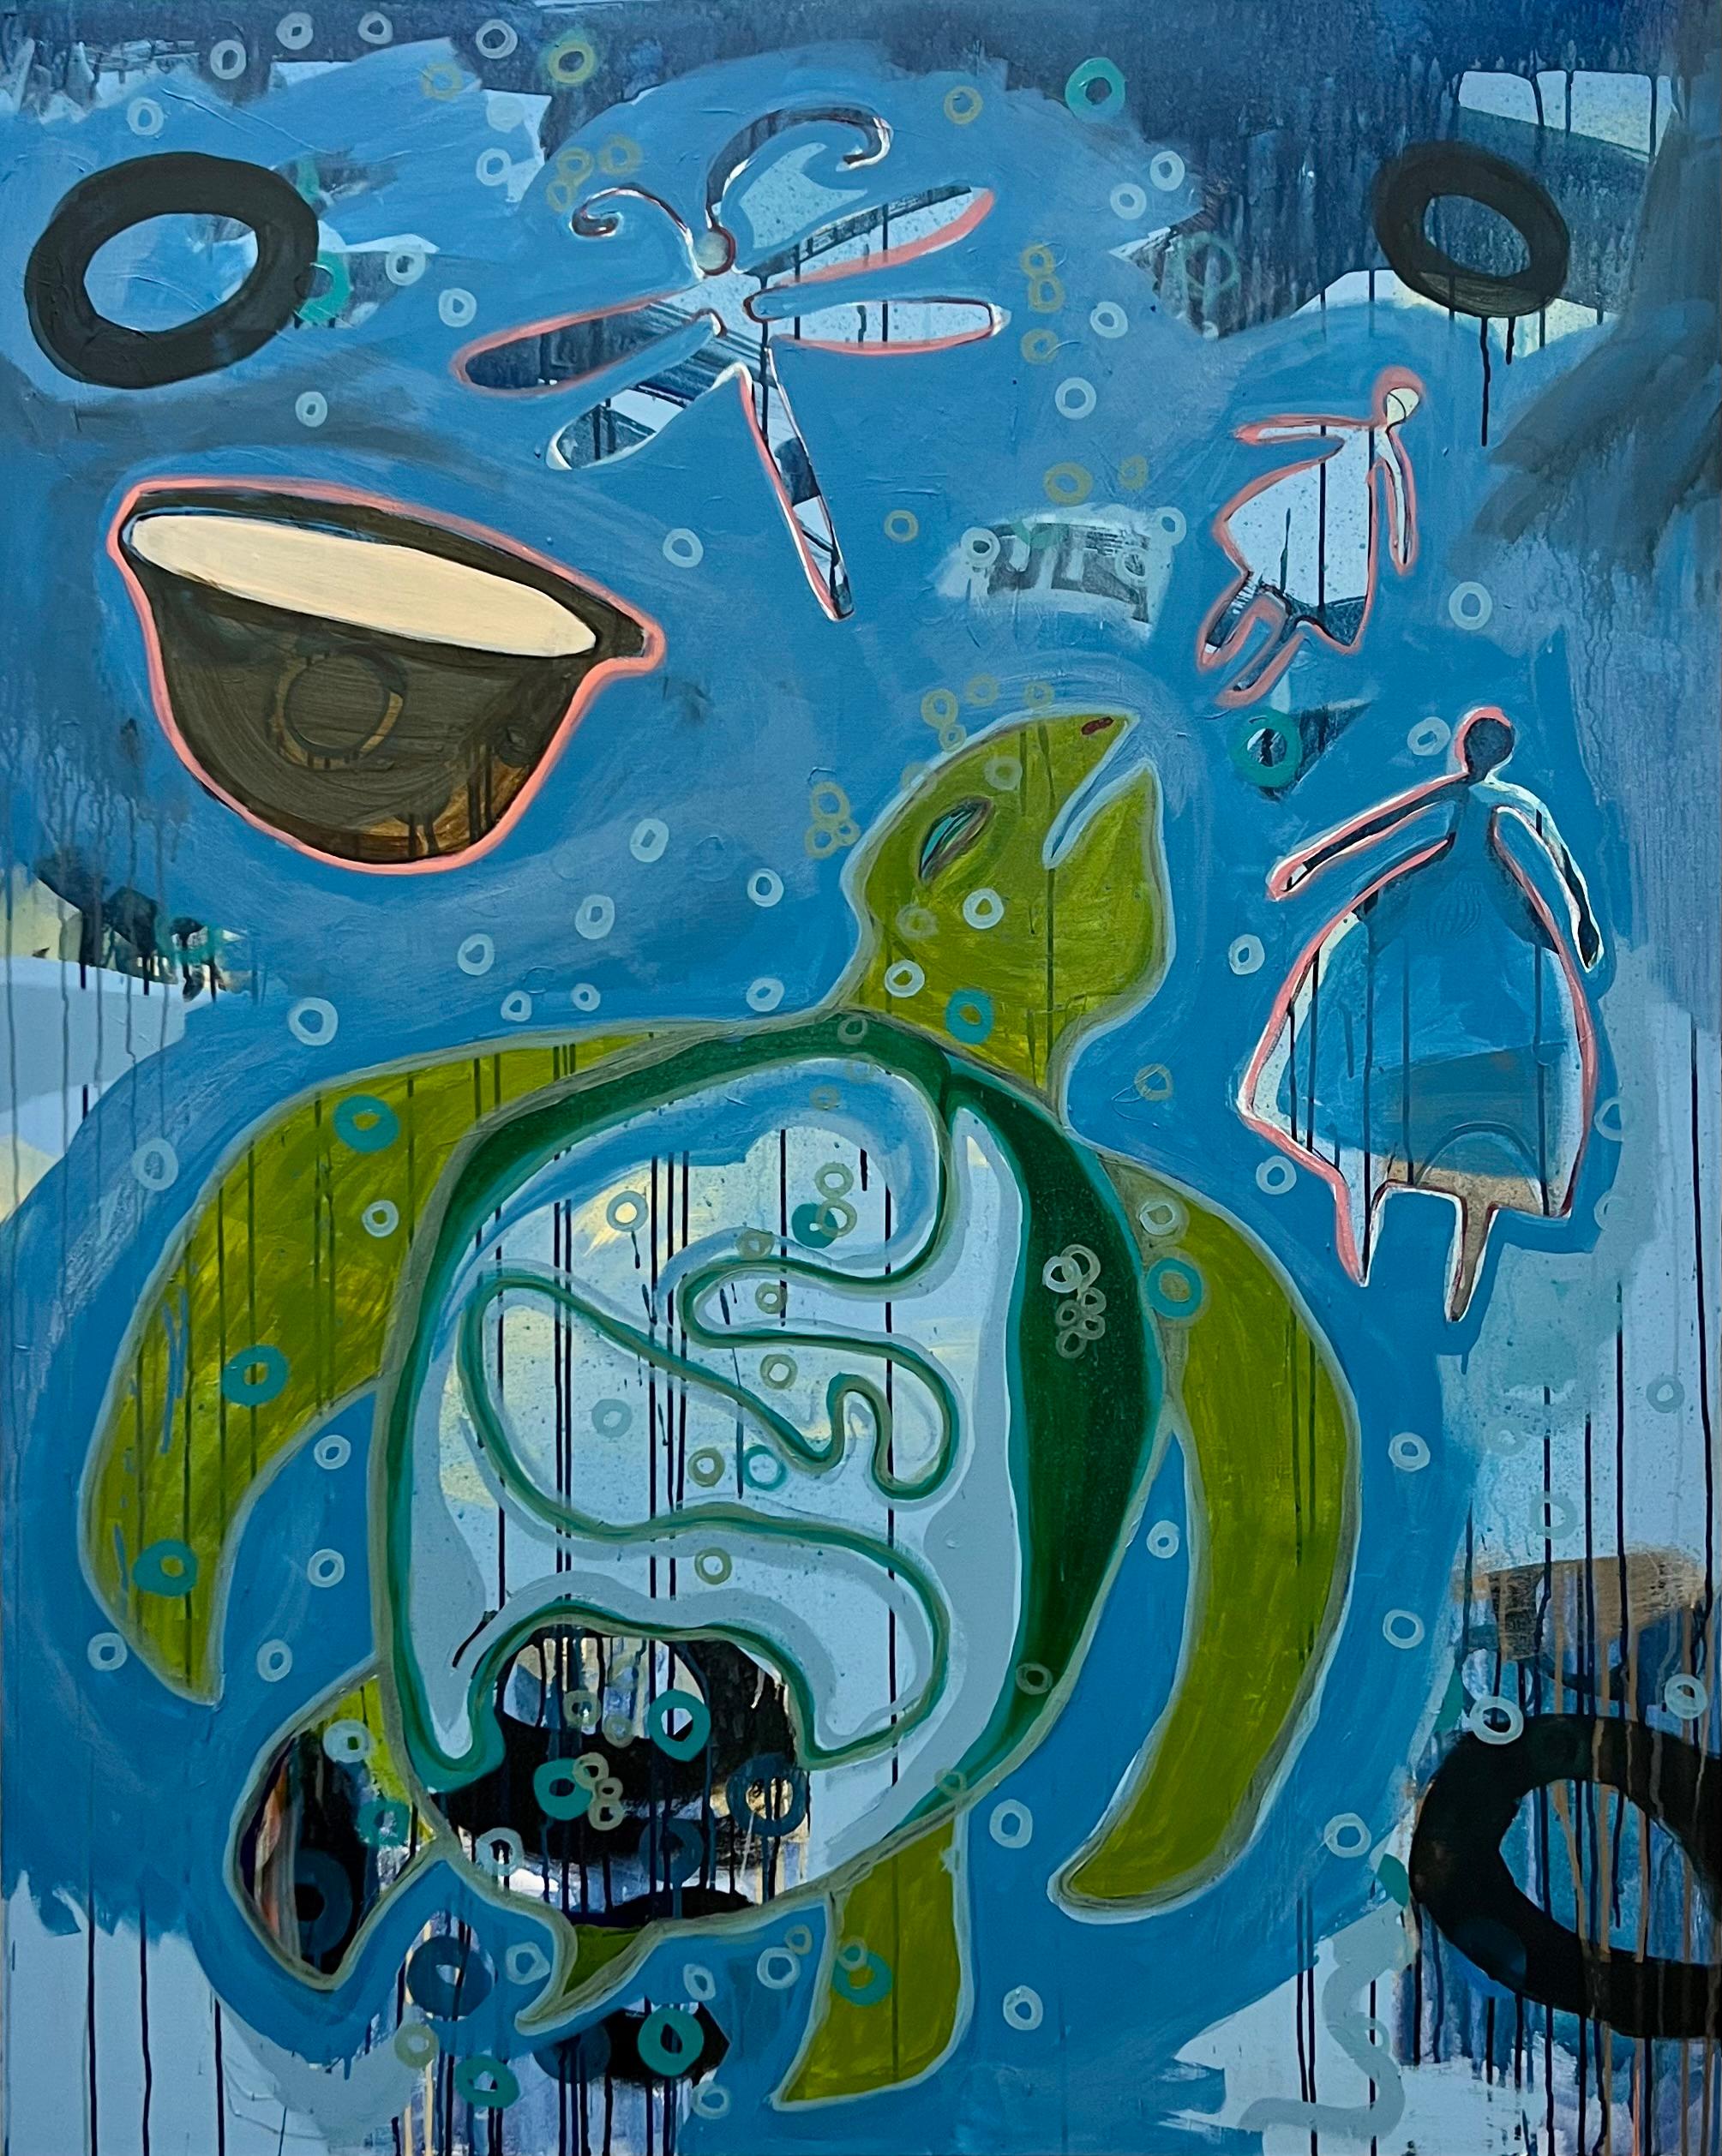 The Dream, von Melanie Yazzie, Navajo, Gemälde, vertikal, Schildkröte, Blau, Grün